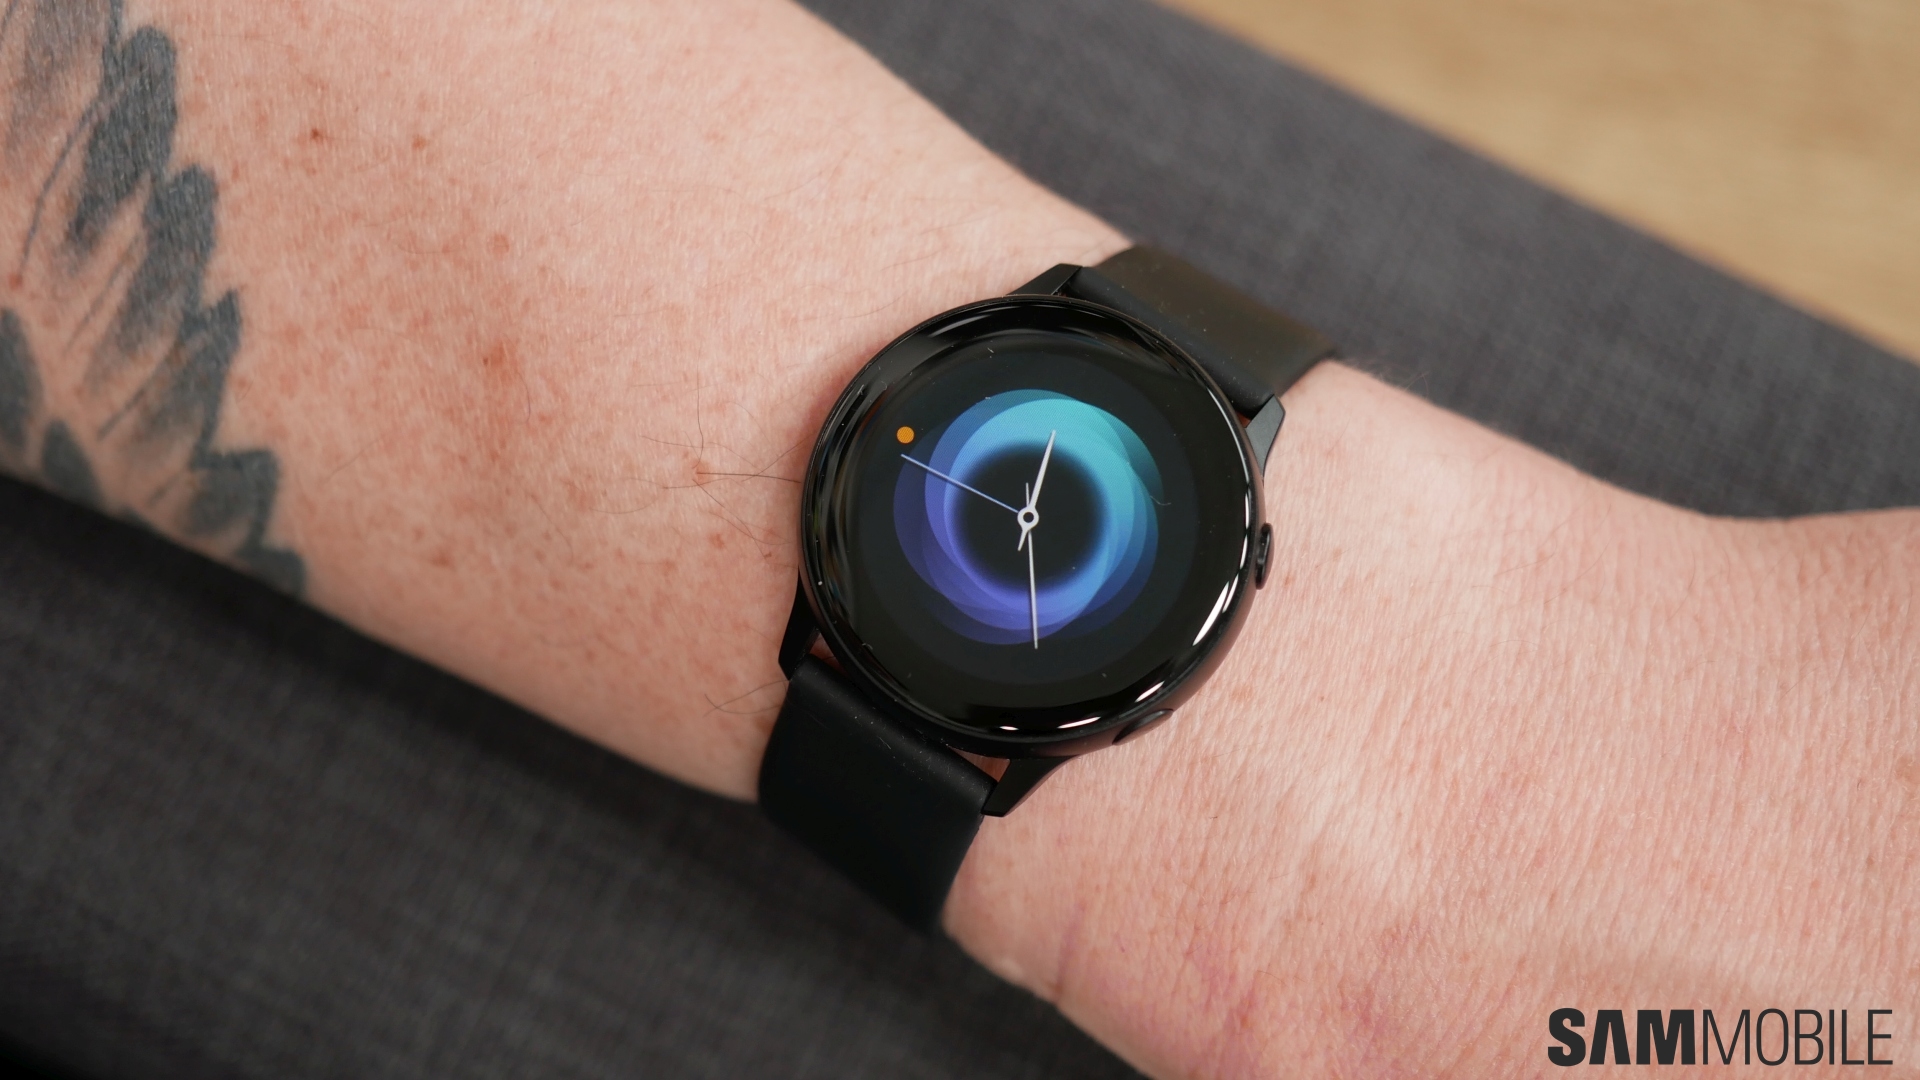 Samsung Galaxy Watch Active 2 update Với bản cập nhật mới nhất của chiếc đồng hồ thông minh Samsung Galaxy Watch Active 2, bạn sẽ được trải nghiệm những tính năng vượt trội, tối ưu hóa hoạt động, cũng như giải quyết những vấn đề phát sinh trước đó. Không nên bỏ lỡ cơ hội trải nghiệm những tính năng mới nhất mà cập nhật này đem lại cho bạn.